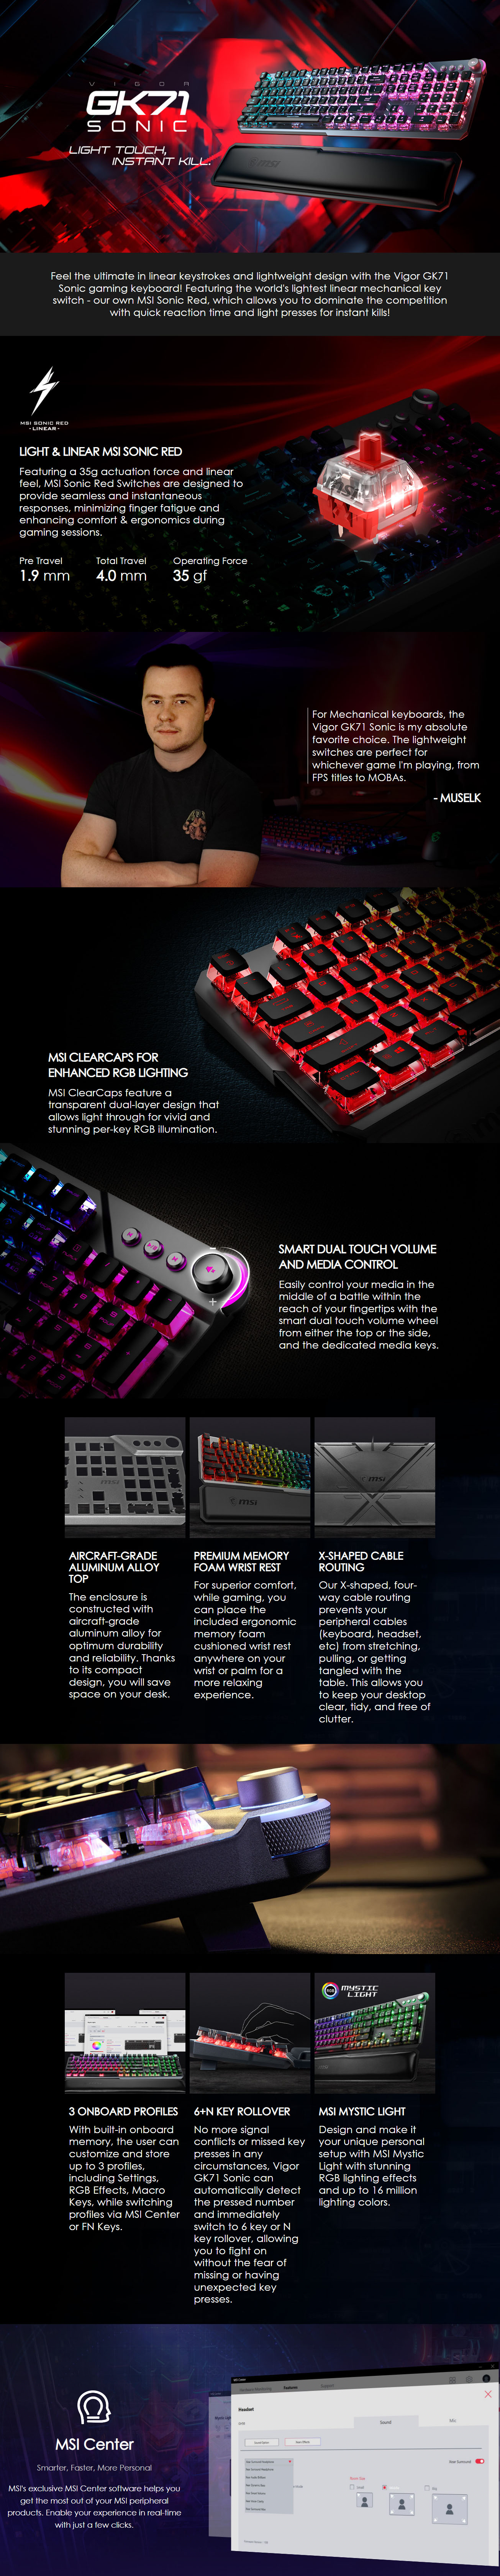 Keyboards-MSI-Vigor-GK71-Sonic-RGB-Mechanical-Gaming-Keyboard-Red-Switch-1